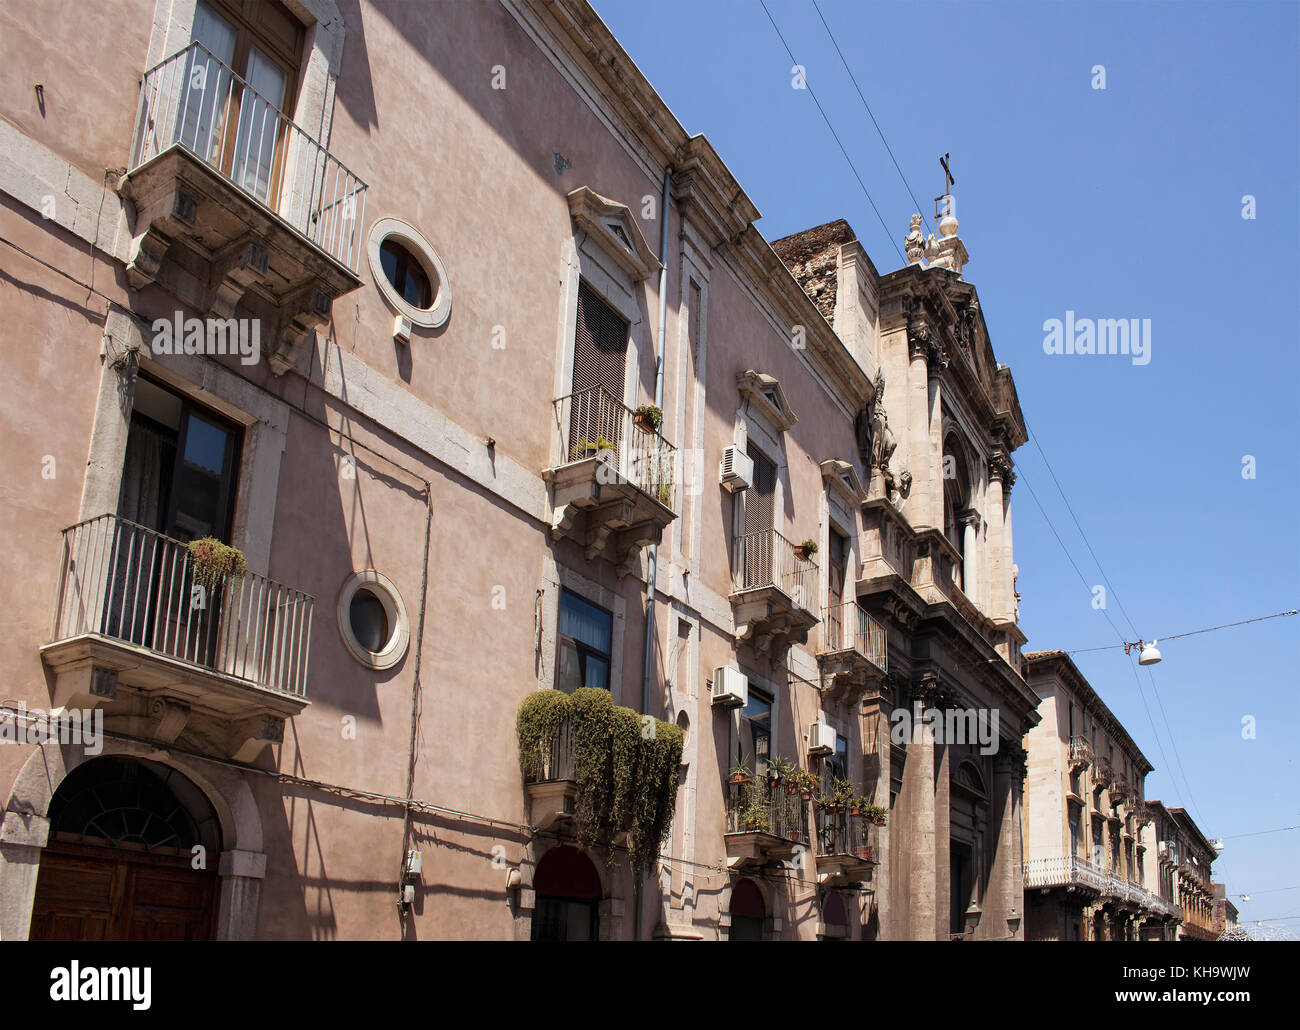 Vista del vecchio edificio storico in catania / Italia. immagine mostra lo stile architettonico della regione. Foto Stock